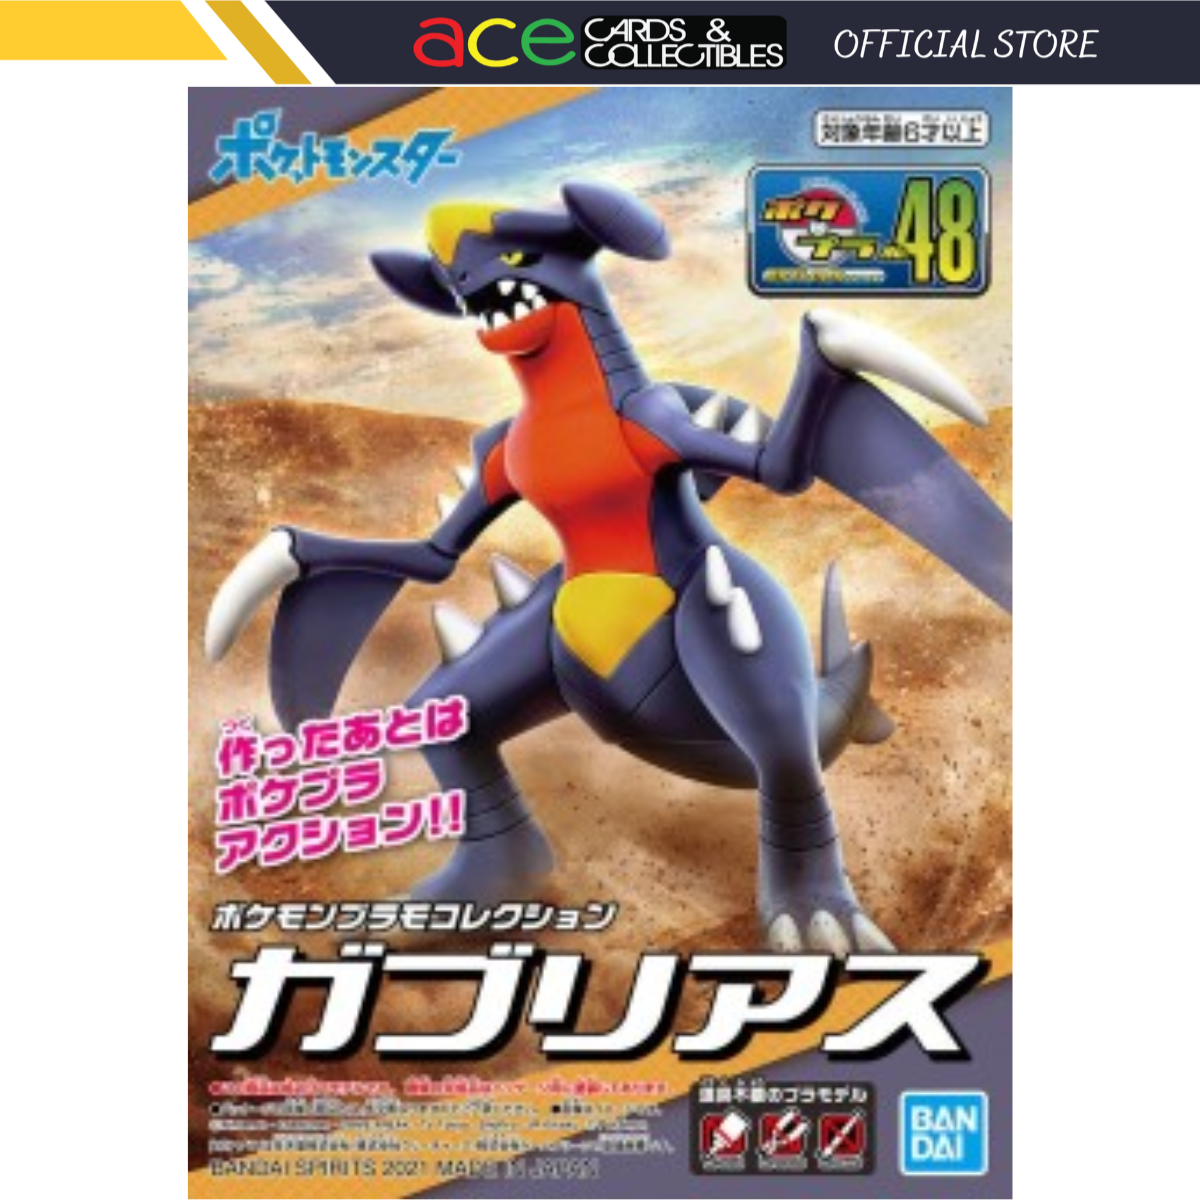 Pokémon Plastic Model Collection No.48 &quot;Garchomp&quot;-Bandai-Ace Cards &amp; Collectibles